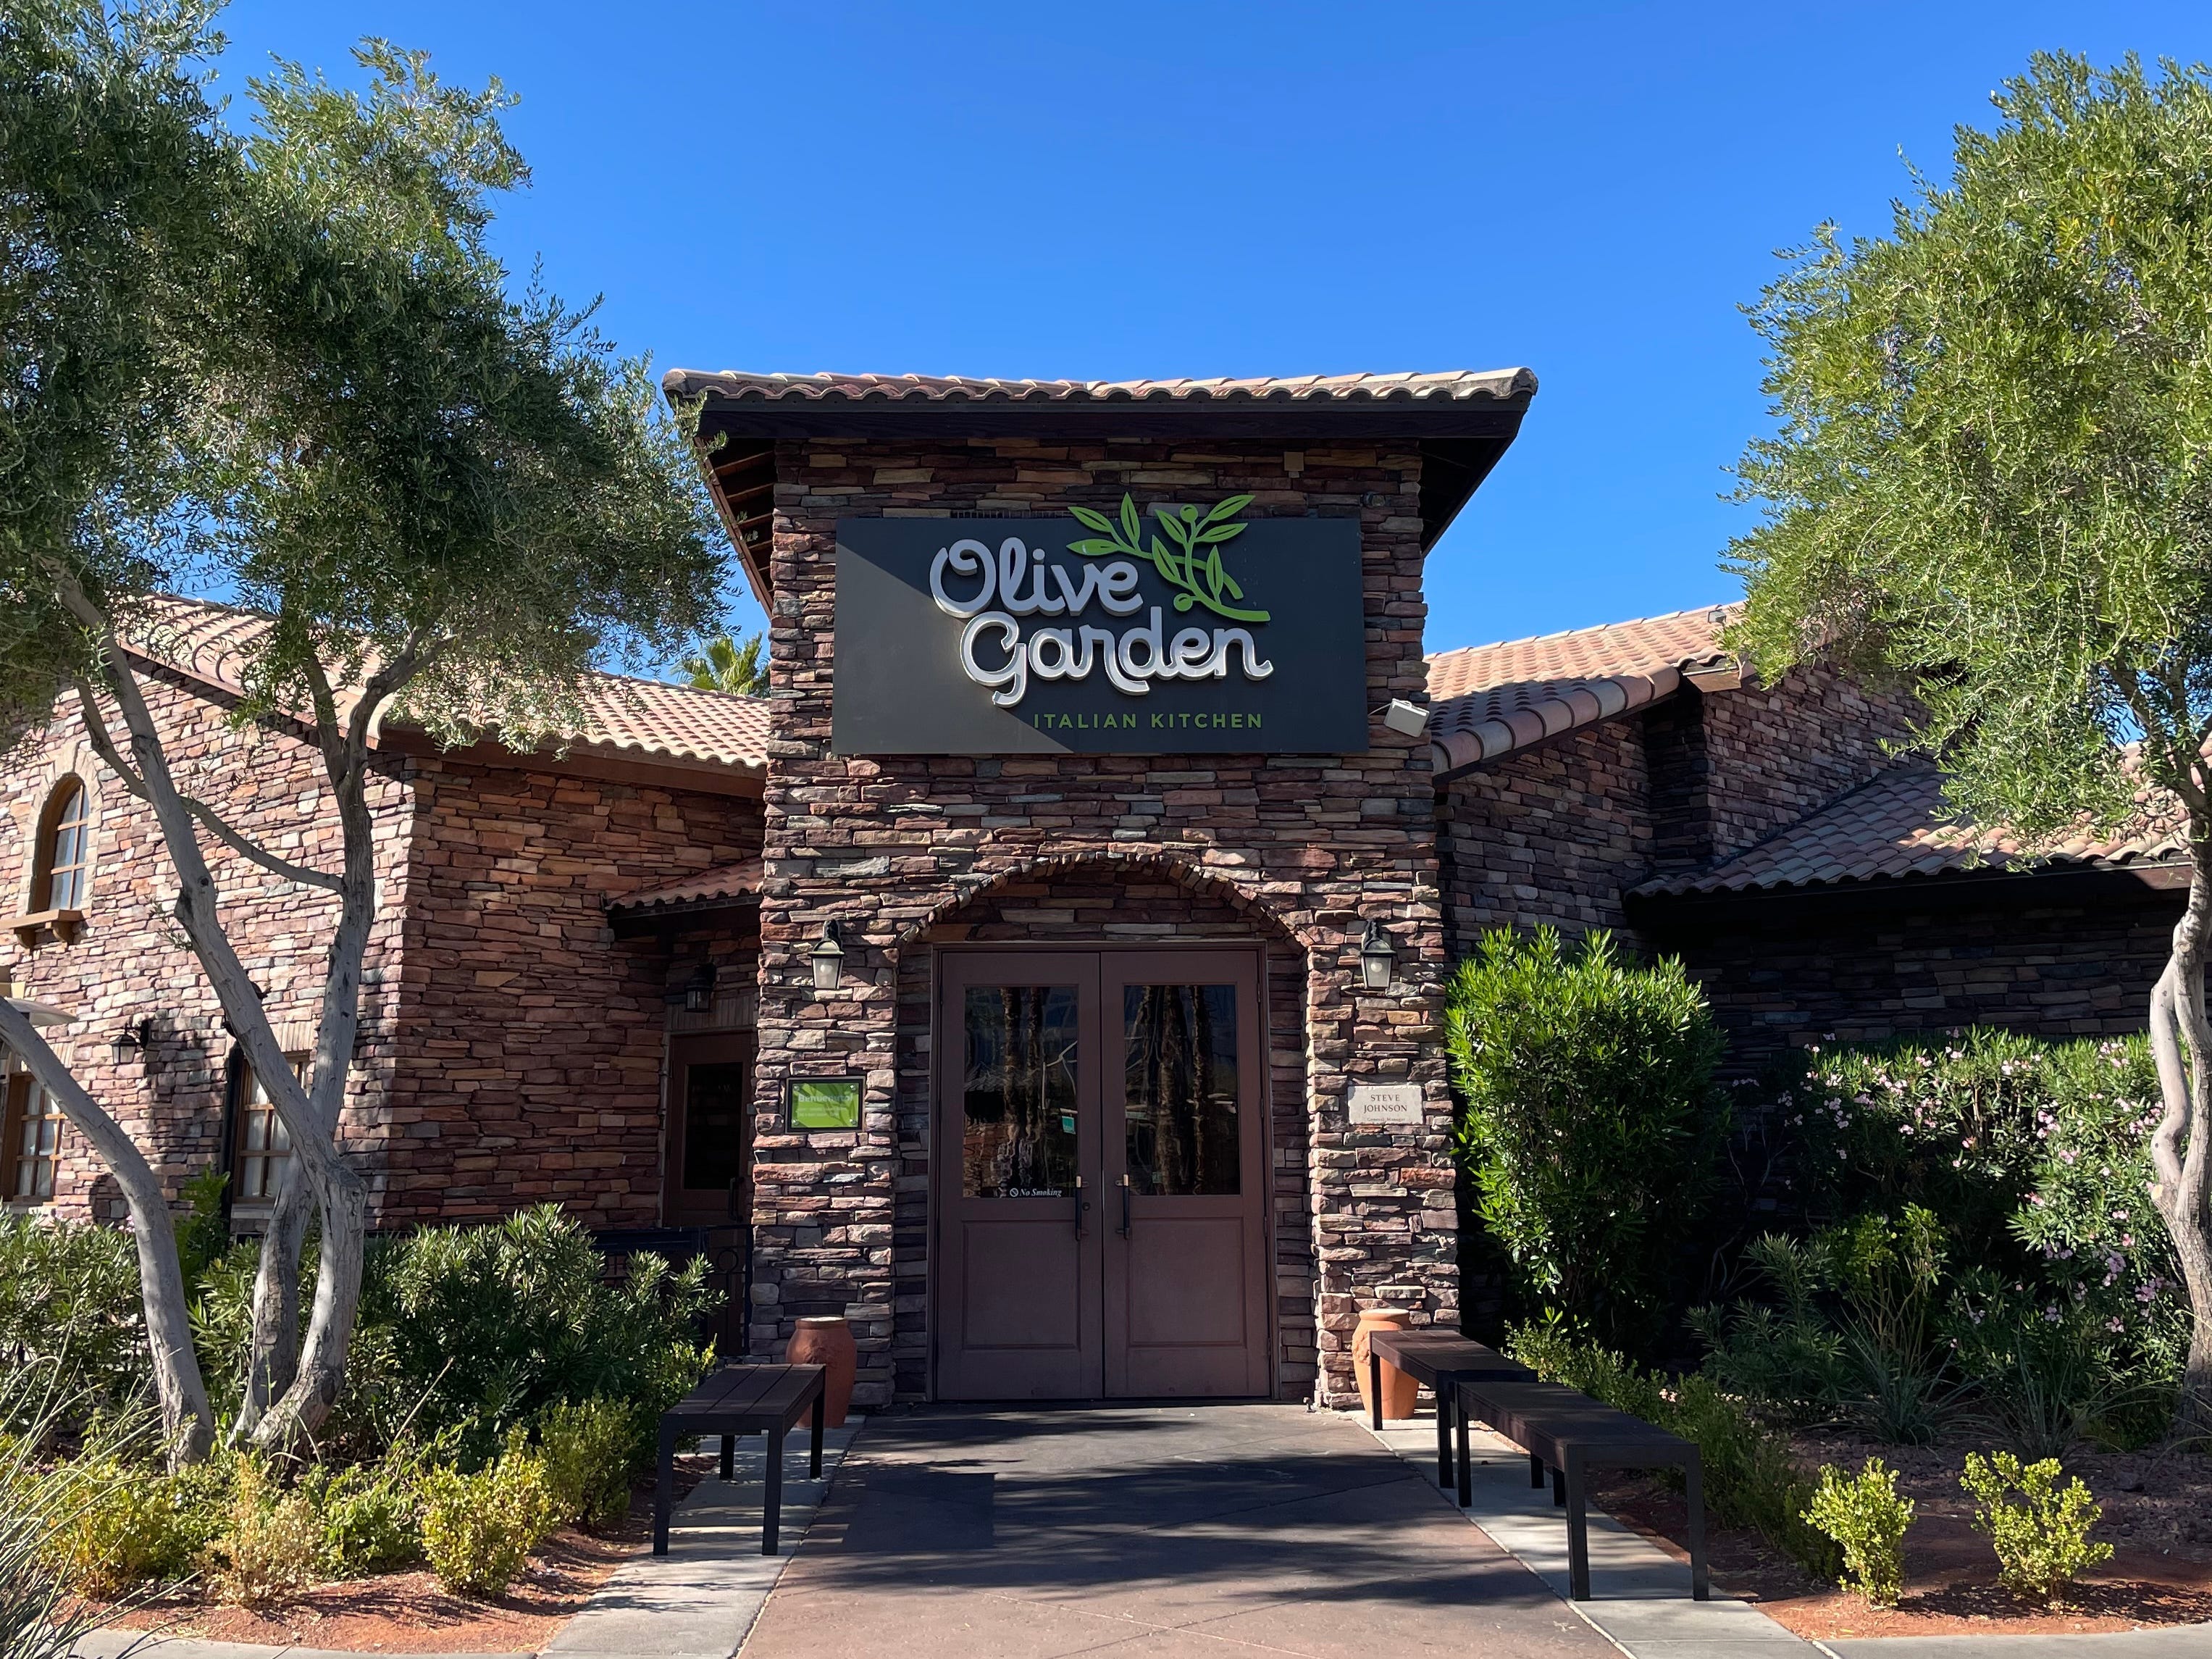 Außenansicht des Olivengartens.  Das Backsteingebäude mit dem „Olive Garden“-Schild ist von Bäumen und einem strahlend blauen Himmel umgeben